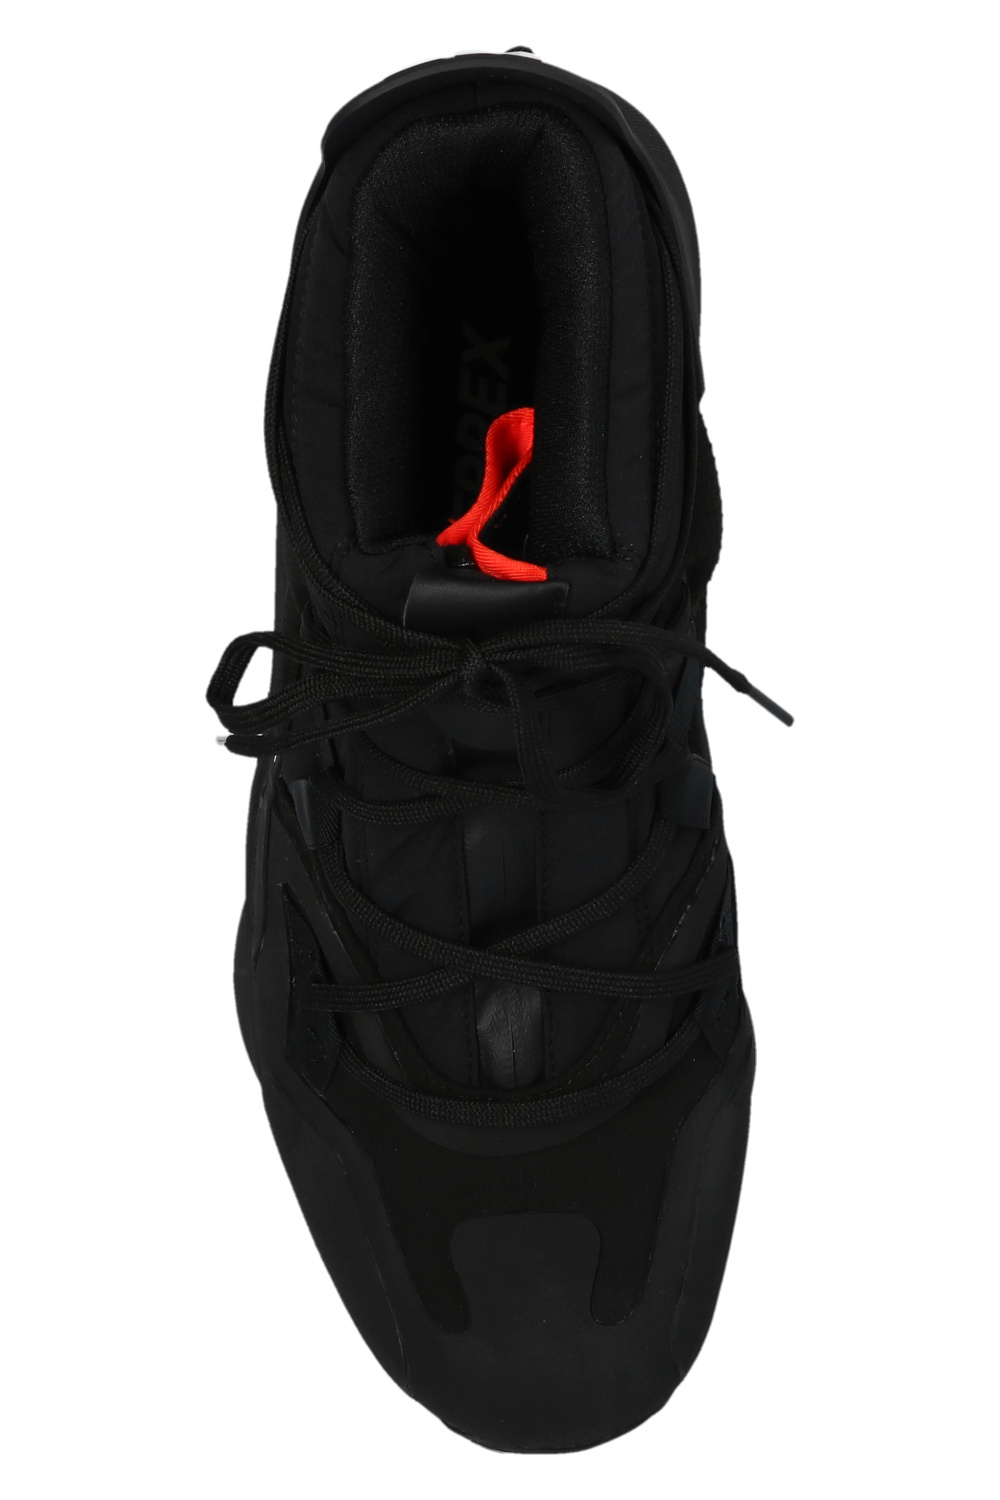 zapatillas de running Saucony marrones baratas menos de 60 ‘Terrex Swift R3 GTX’ sneakers